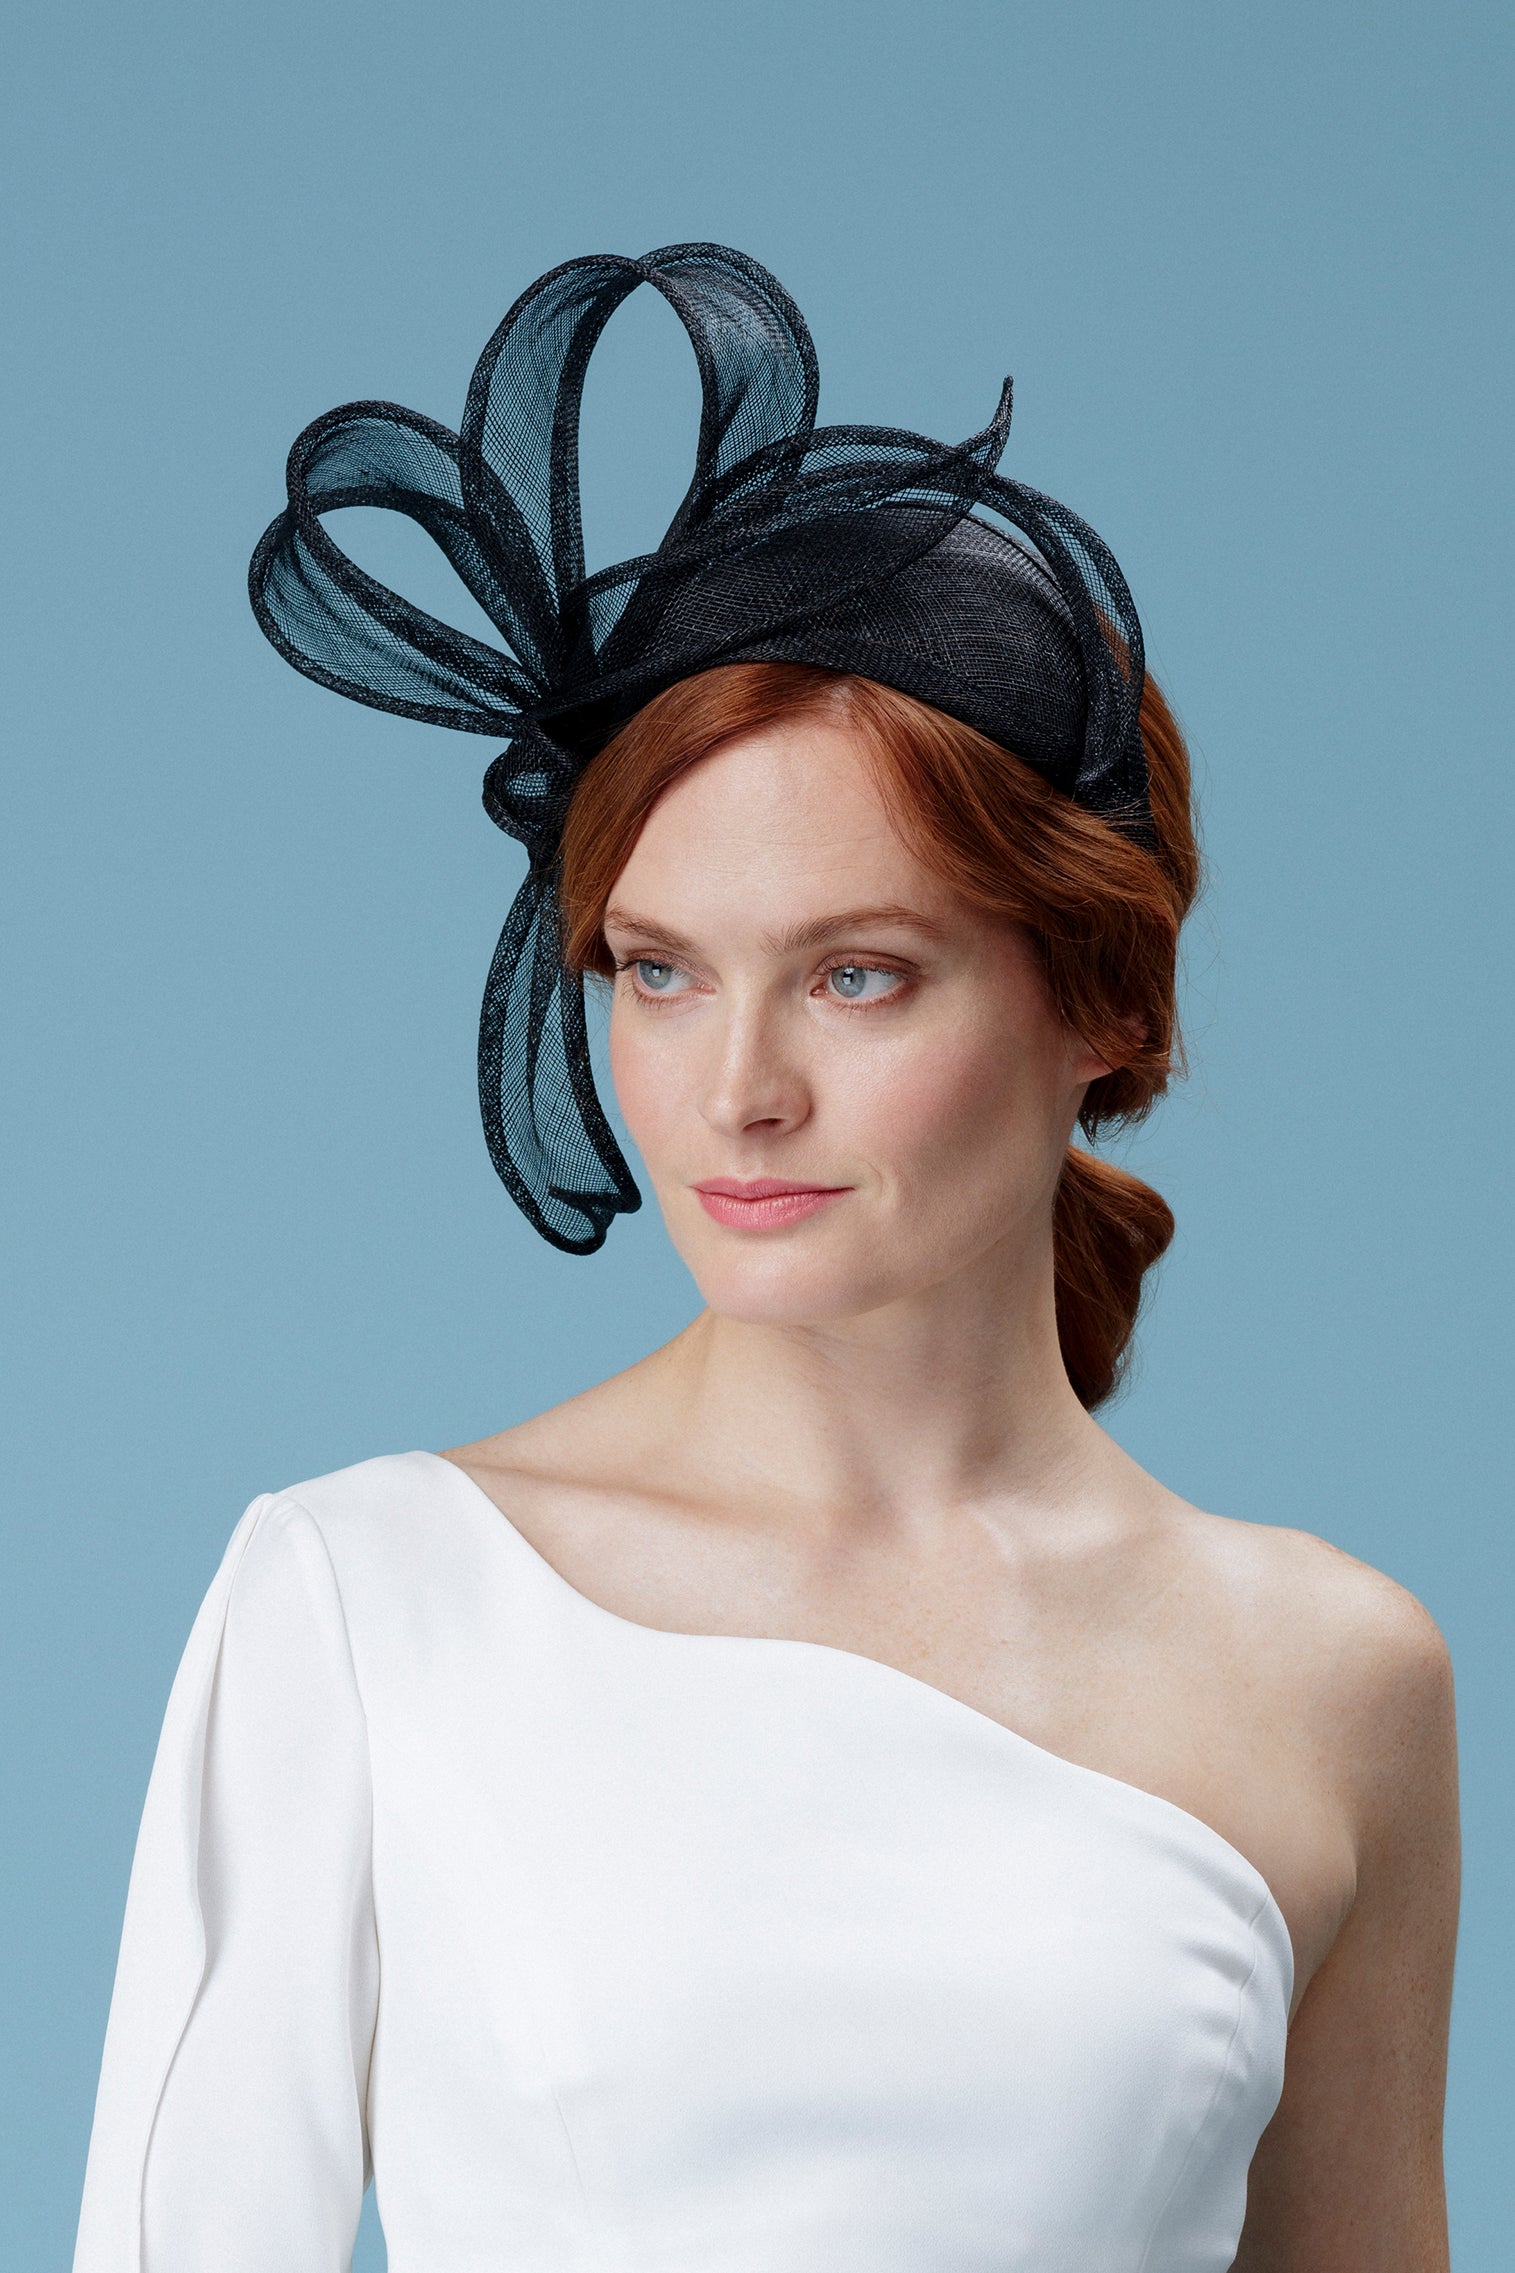 Rosemary Black Headband - Kentucky Derby Hats for Women - Lock & Co. Hatters London UK